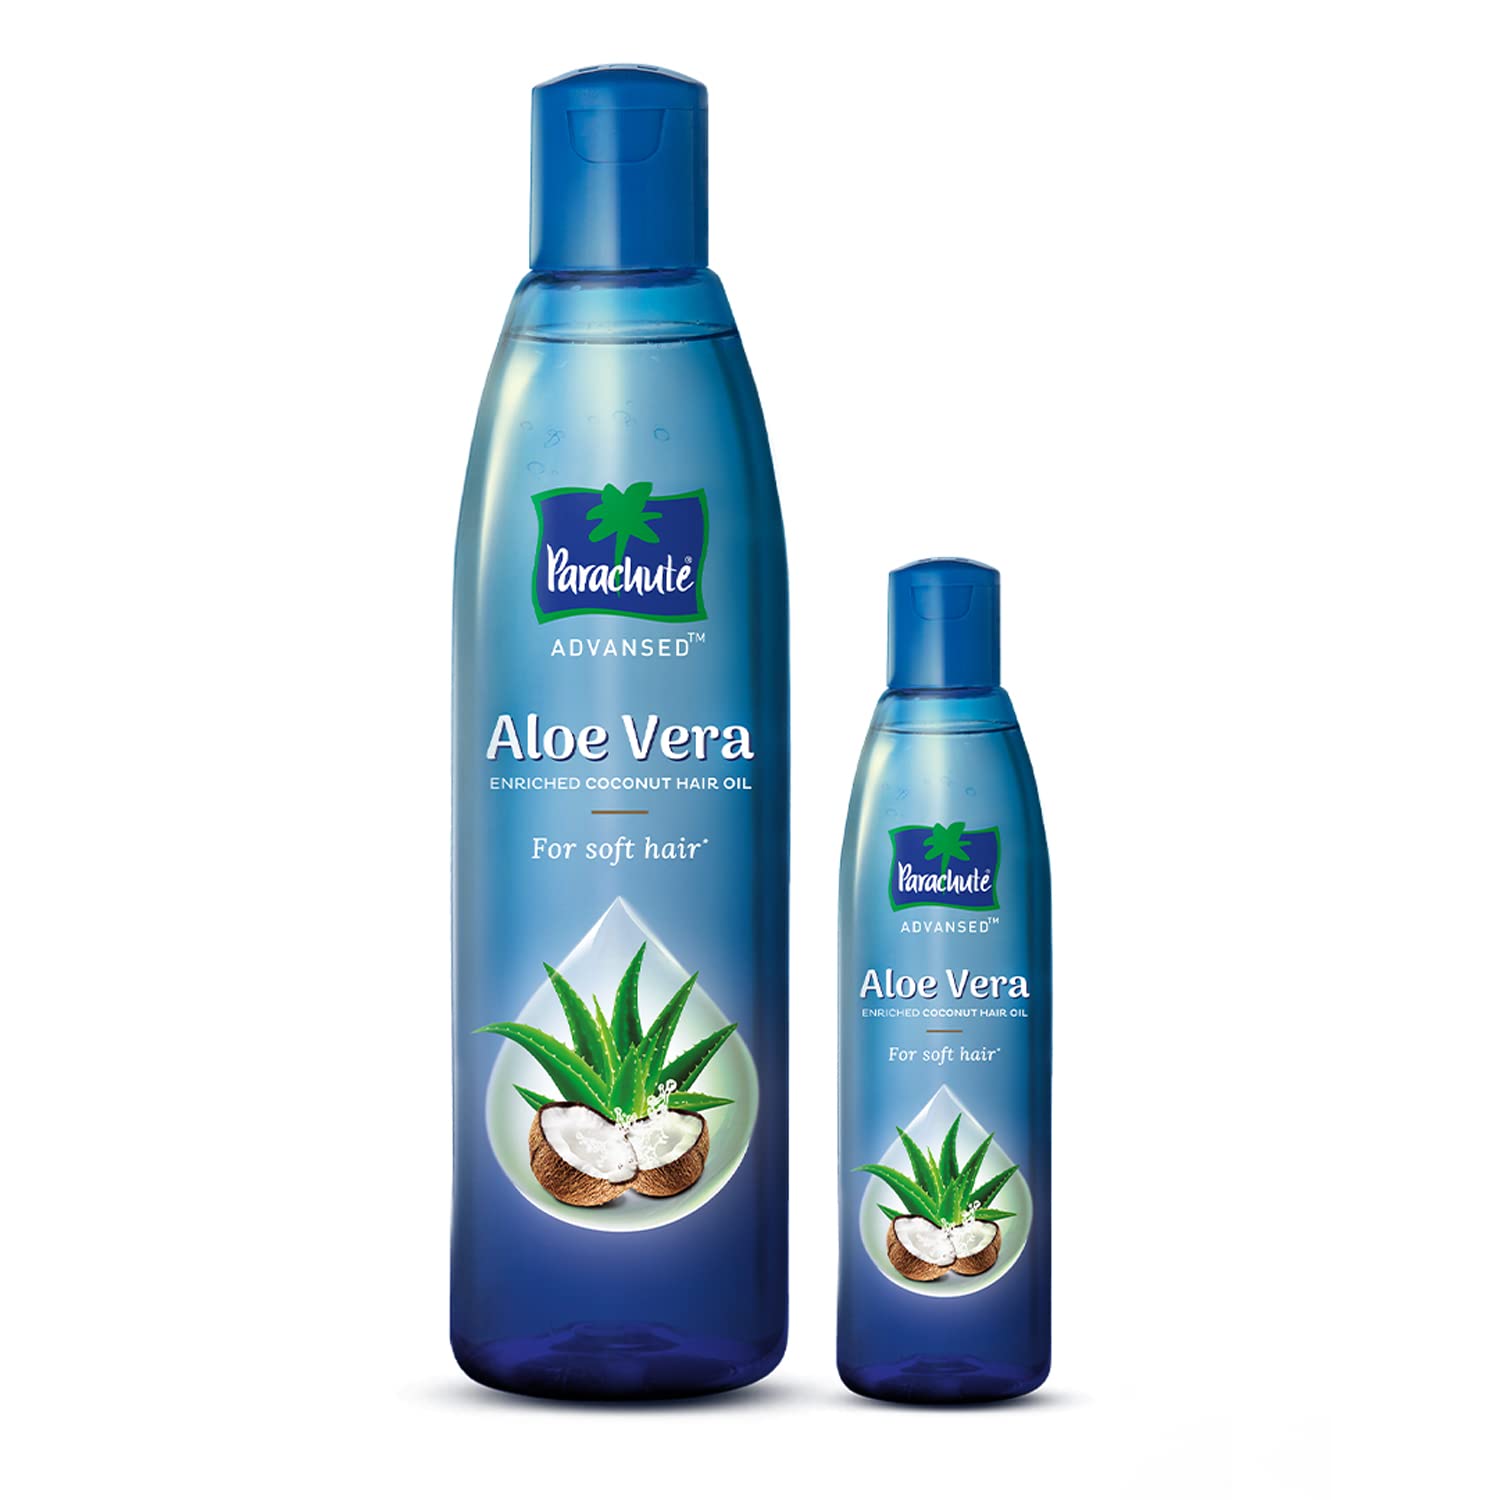 Parachute Advanced Aloe Vera Coconut Hair Oil, Pack of 2 - (250ml + 75ml)